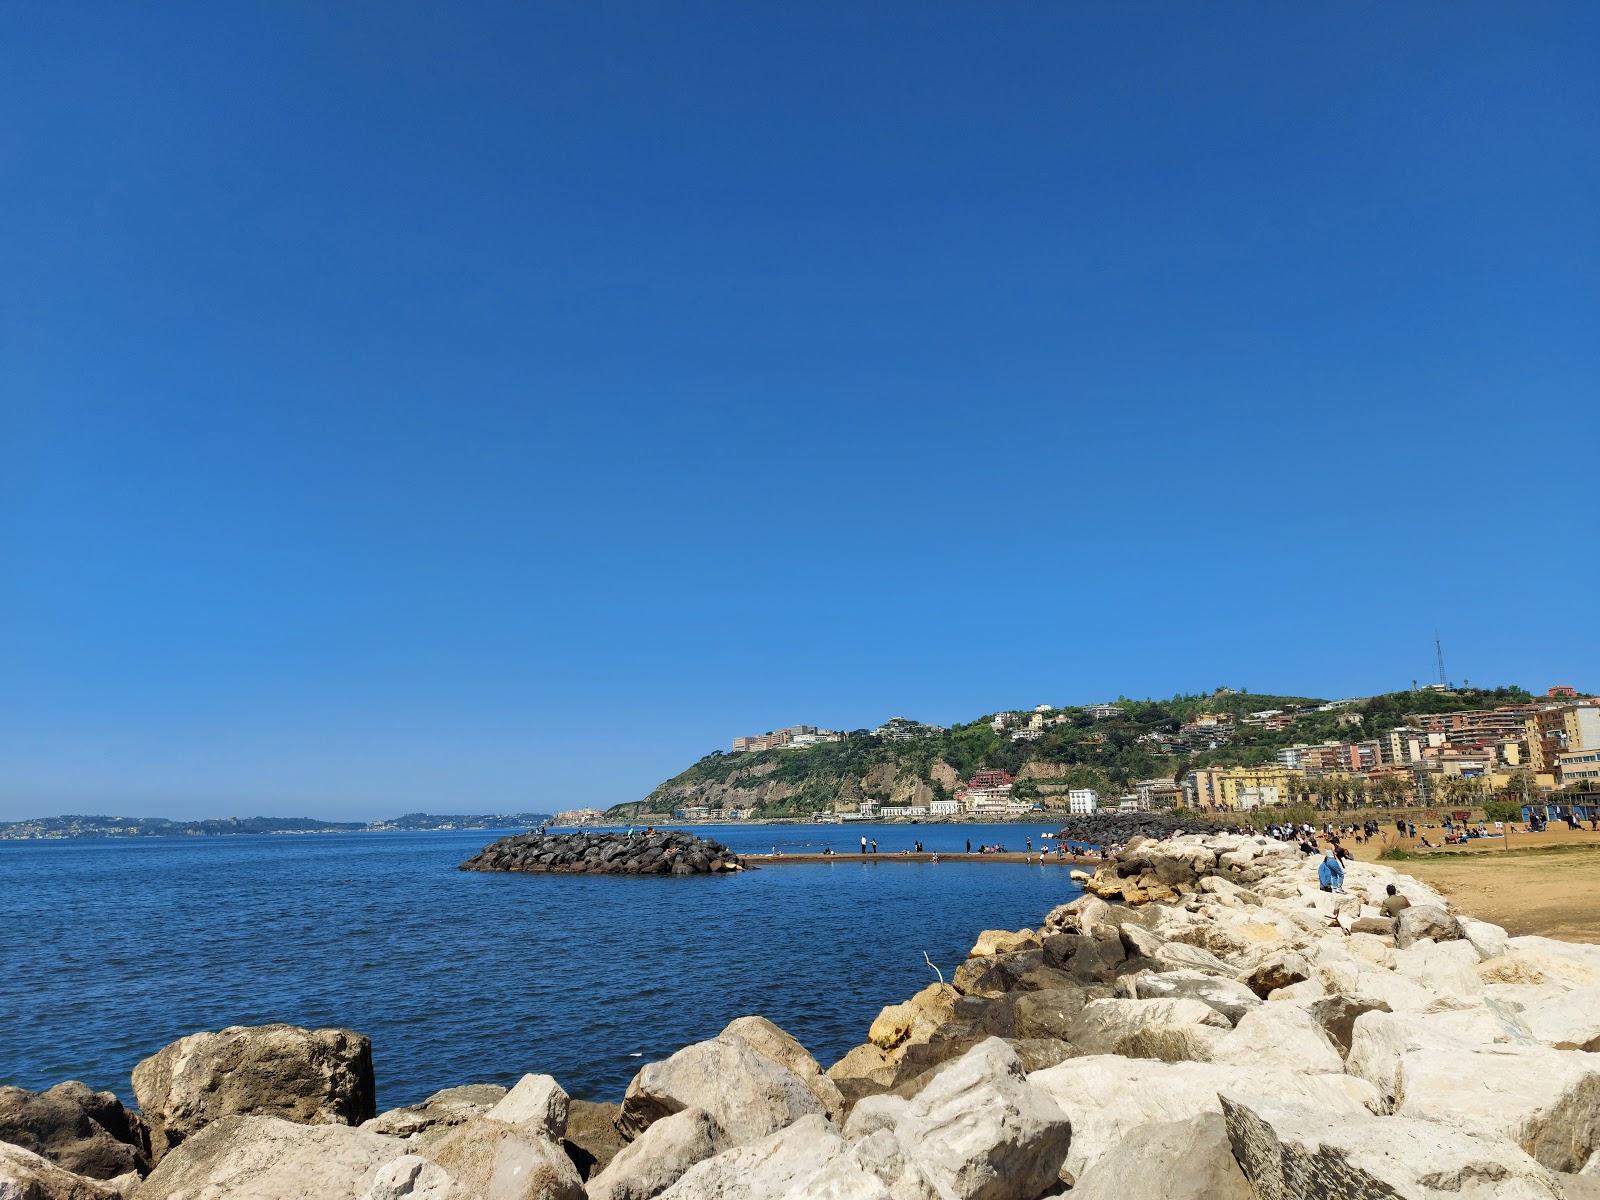 Foto de Spiaggia di Bagnoli - lugar popular entre los conocedores del relax